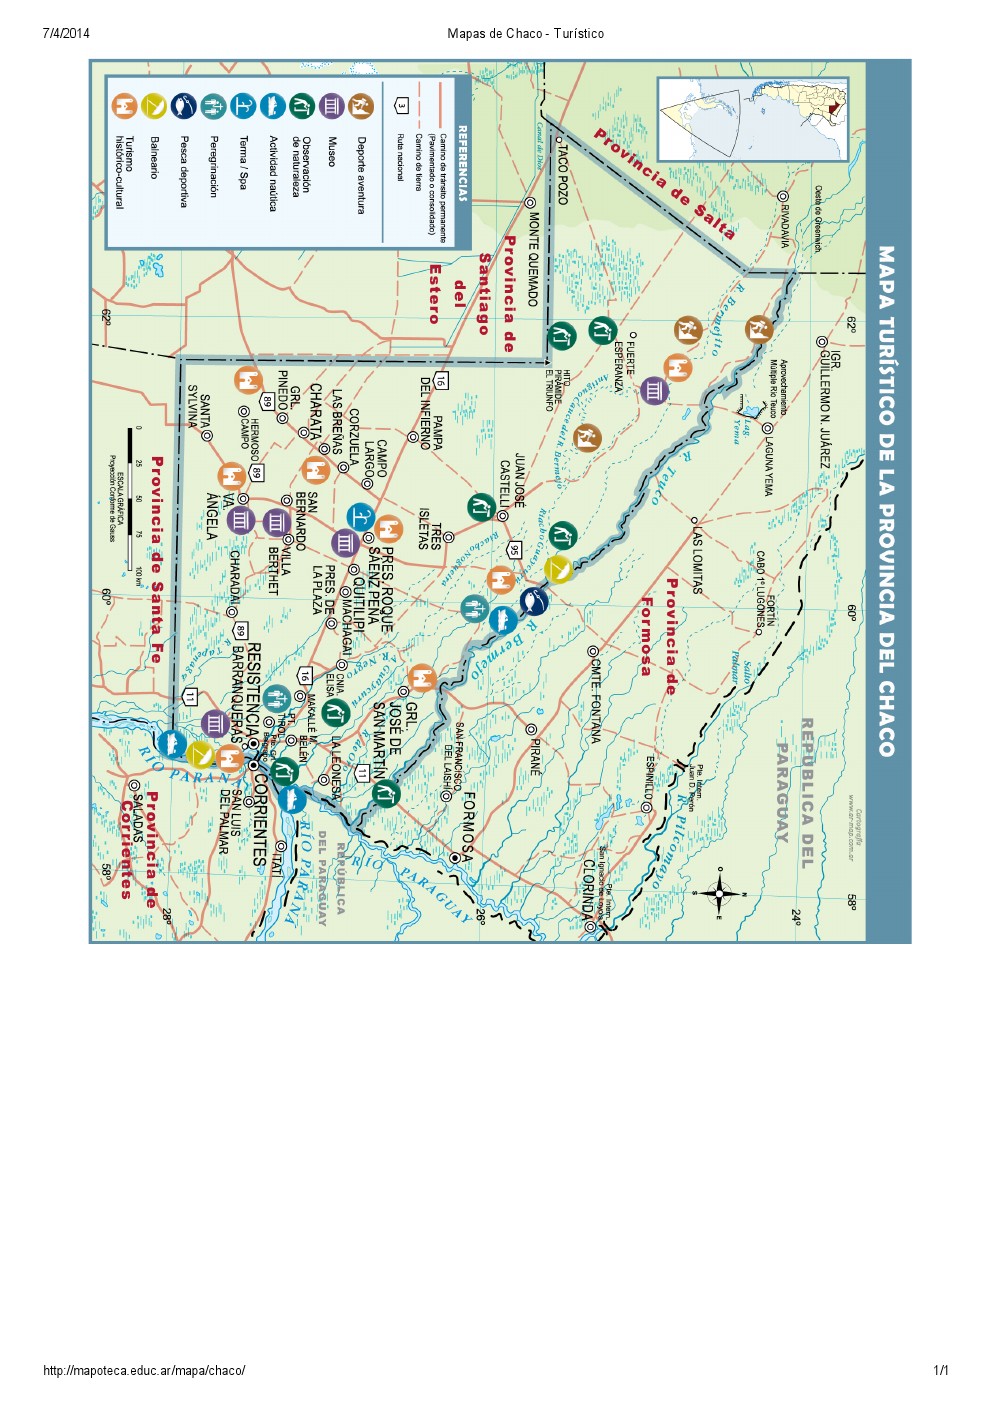 Mapa turístico del Chaco. Mapoteca de Educ.ar